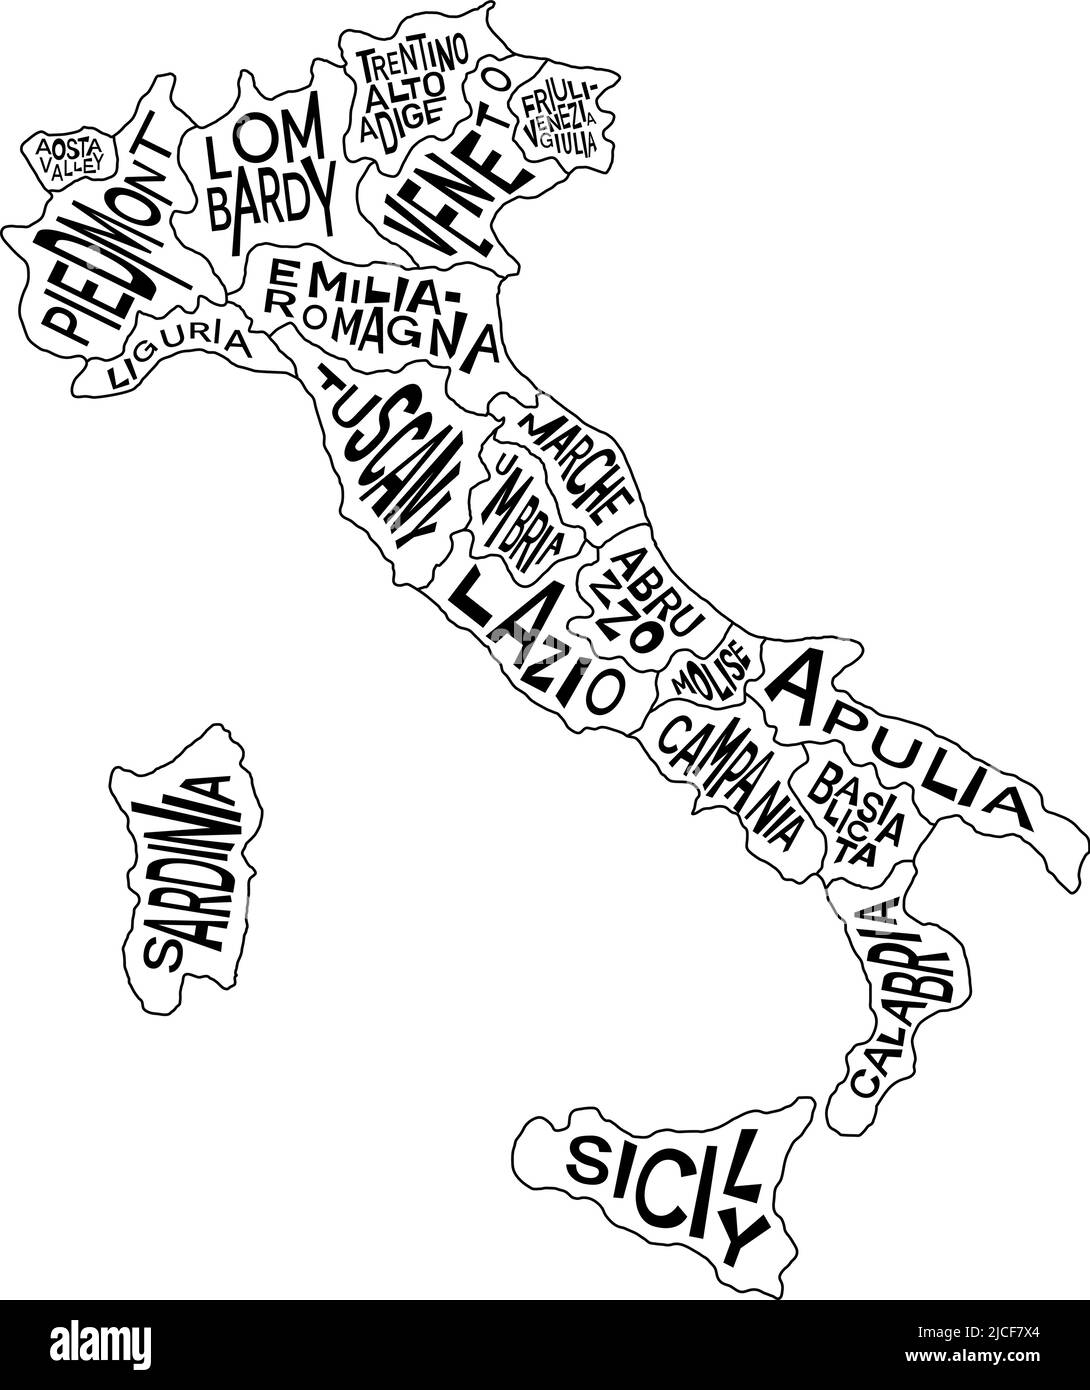 Politische Karte Italiens mit Namen der Verwaltungsprovinzen - Kampanien, Emilia-Romagna, Friaul-Julisch Venetien, Latium und mehr. Infografik zur Karte von Italien Stock Vektor